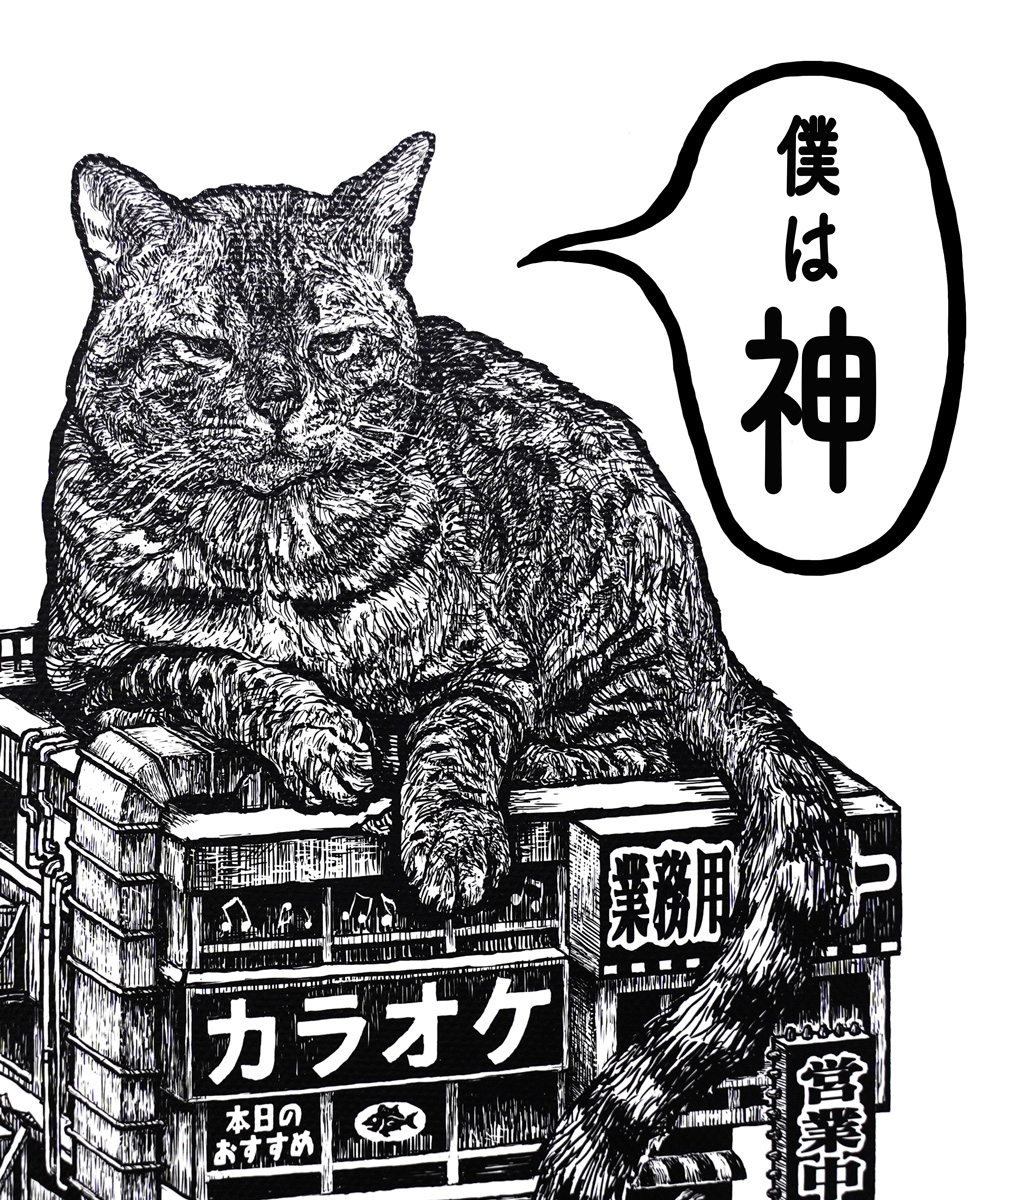 新作完成しました!!
ユニークでかっこいい作品になりました!!
(*^^*)

#西浦康太 #kota_nishiura #猫 #ねこ #cat #制作過程 #動物 #animal #作品 #アート #art #artwork #Artist 